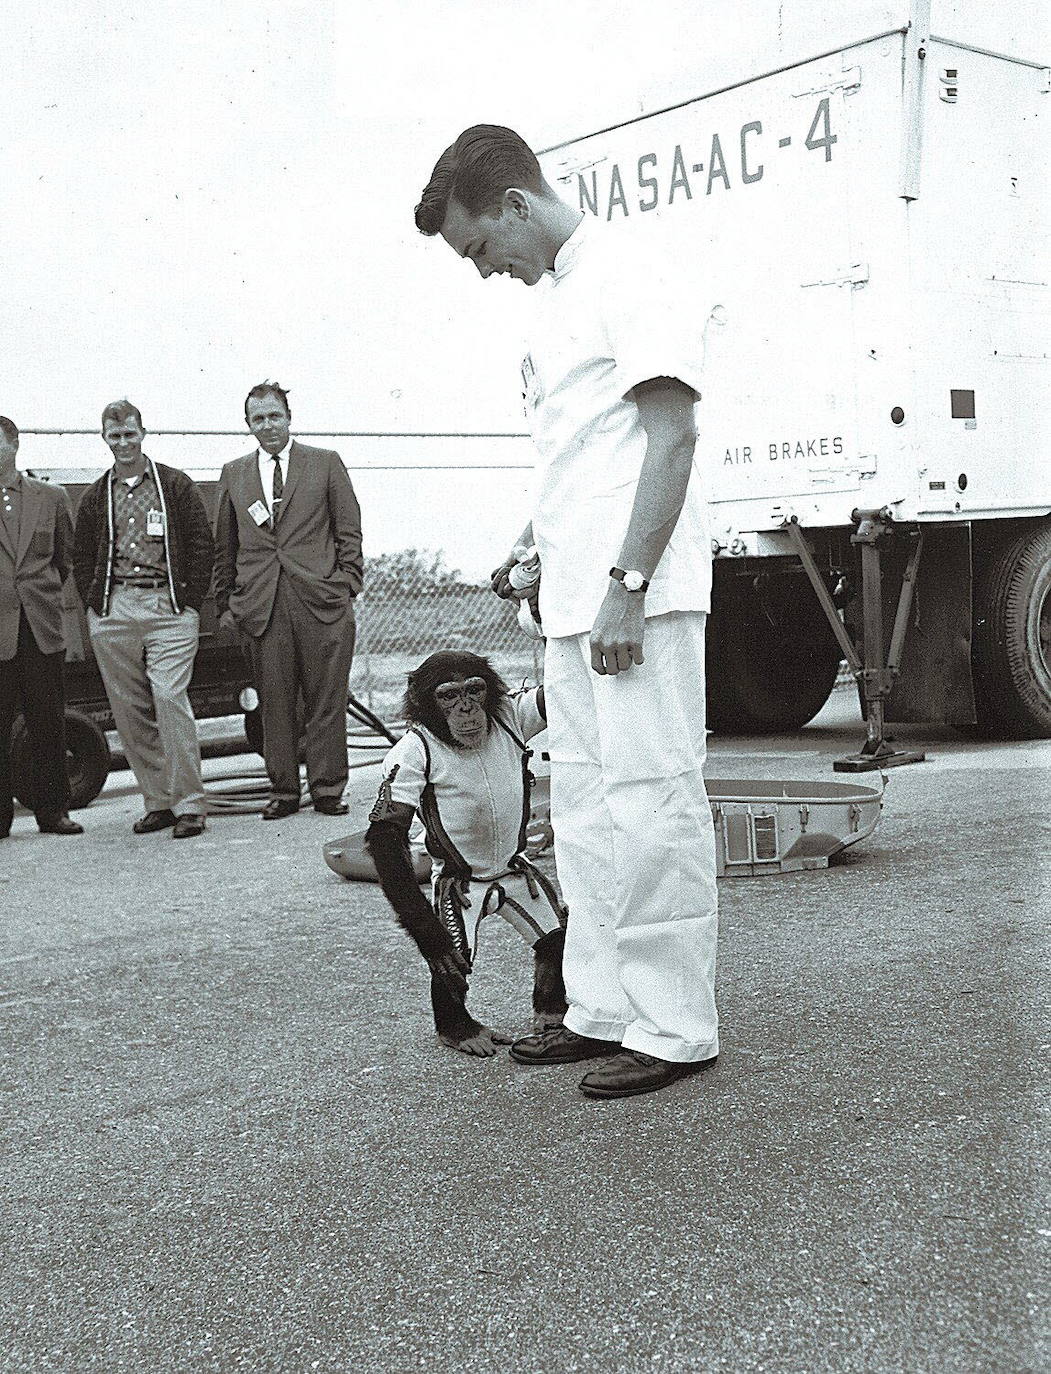 El astronauta estadounidense Alan B. Shepard es fotografiado con el chimpancé Ham, quien lo precedió en el espacio con un vuelo suborbital de 16 minutos realizado a bordo del cohete Mercury Redstone el 31 de enero de 1961. La misión de Ham allanó el camino para el lanzamiento exitoso del primer astronauta humano de Estados Unidos, Alan B. Shepard, Jr.